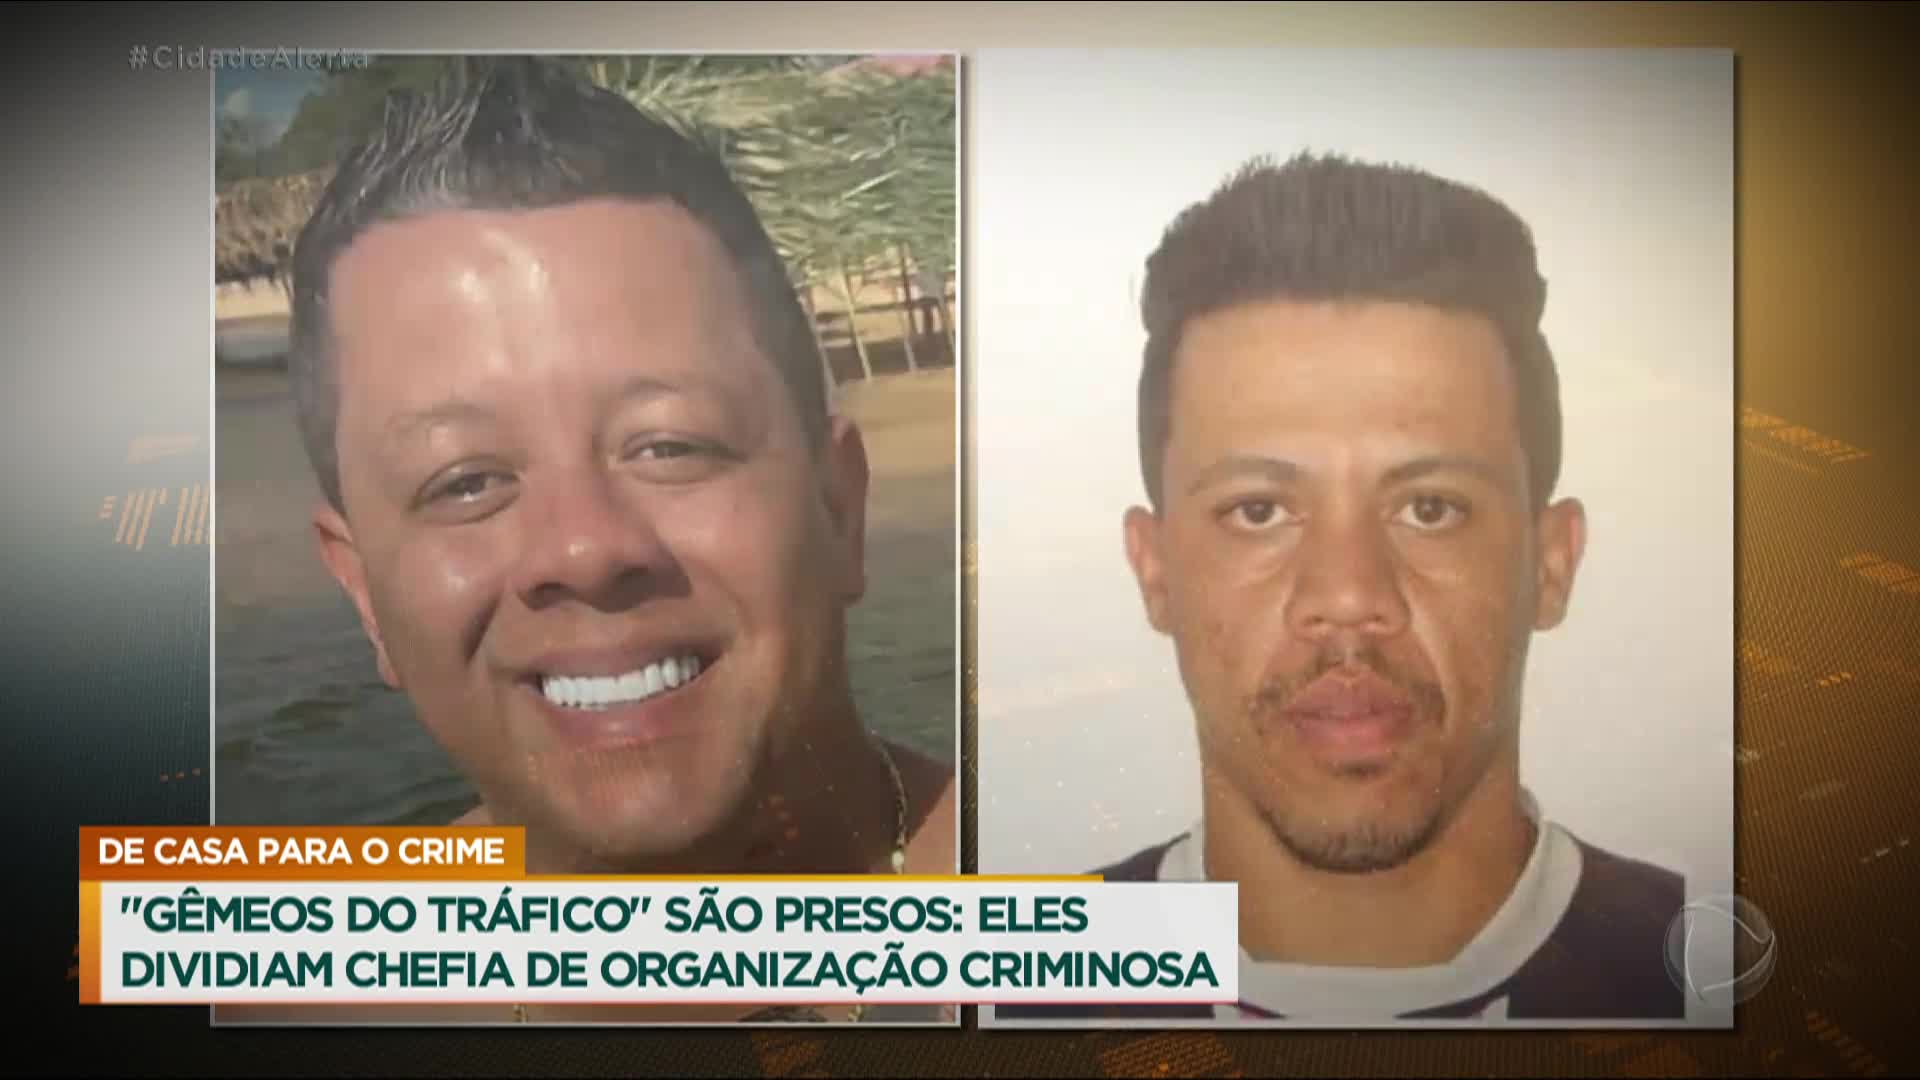 Vídeo: Irmãos gêmeos dividiam chefia de organização criminosa em Goiás